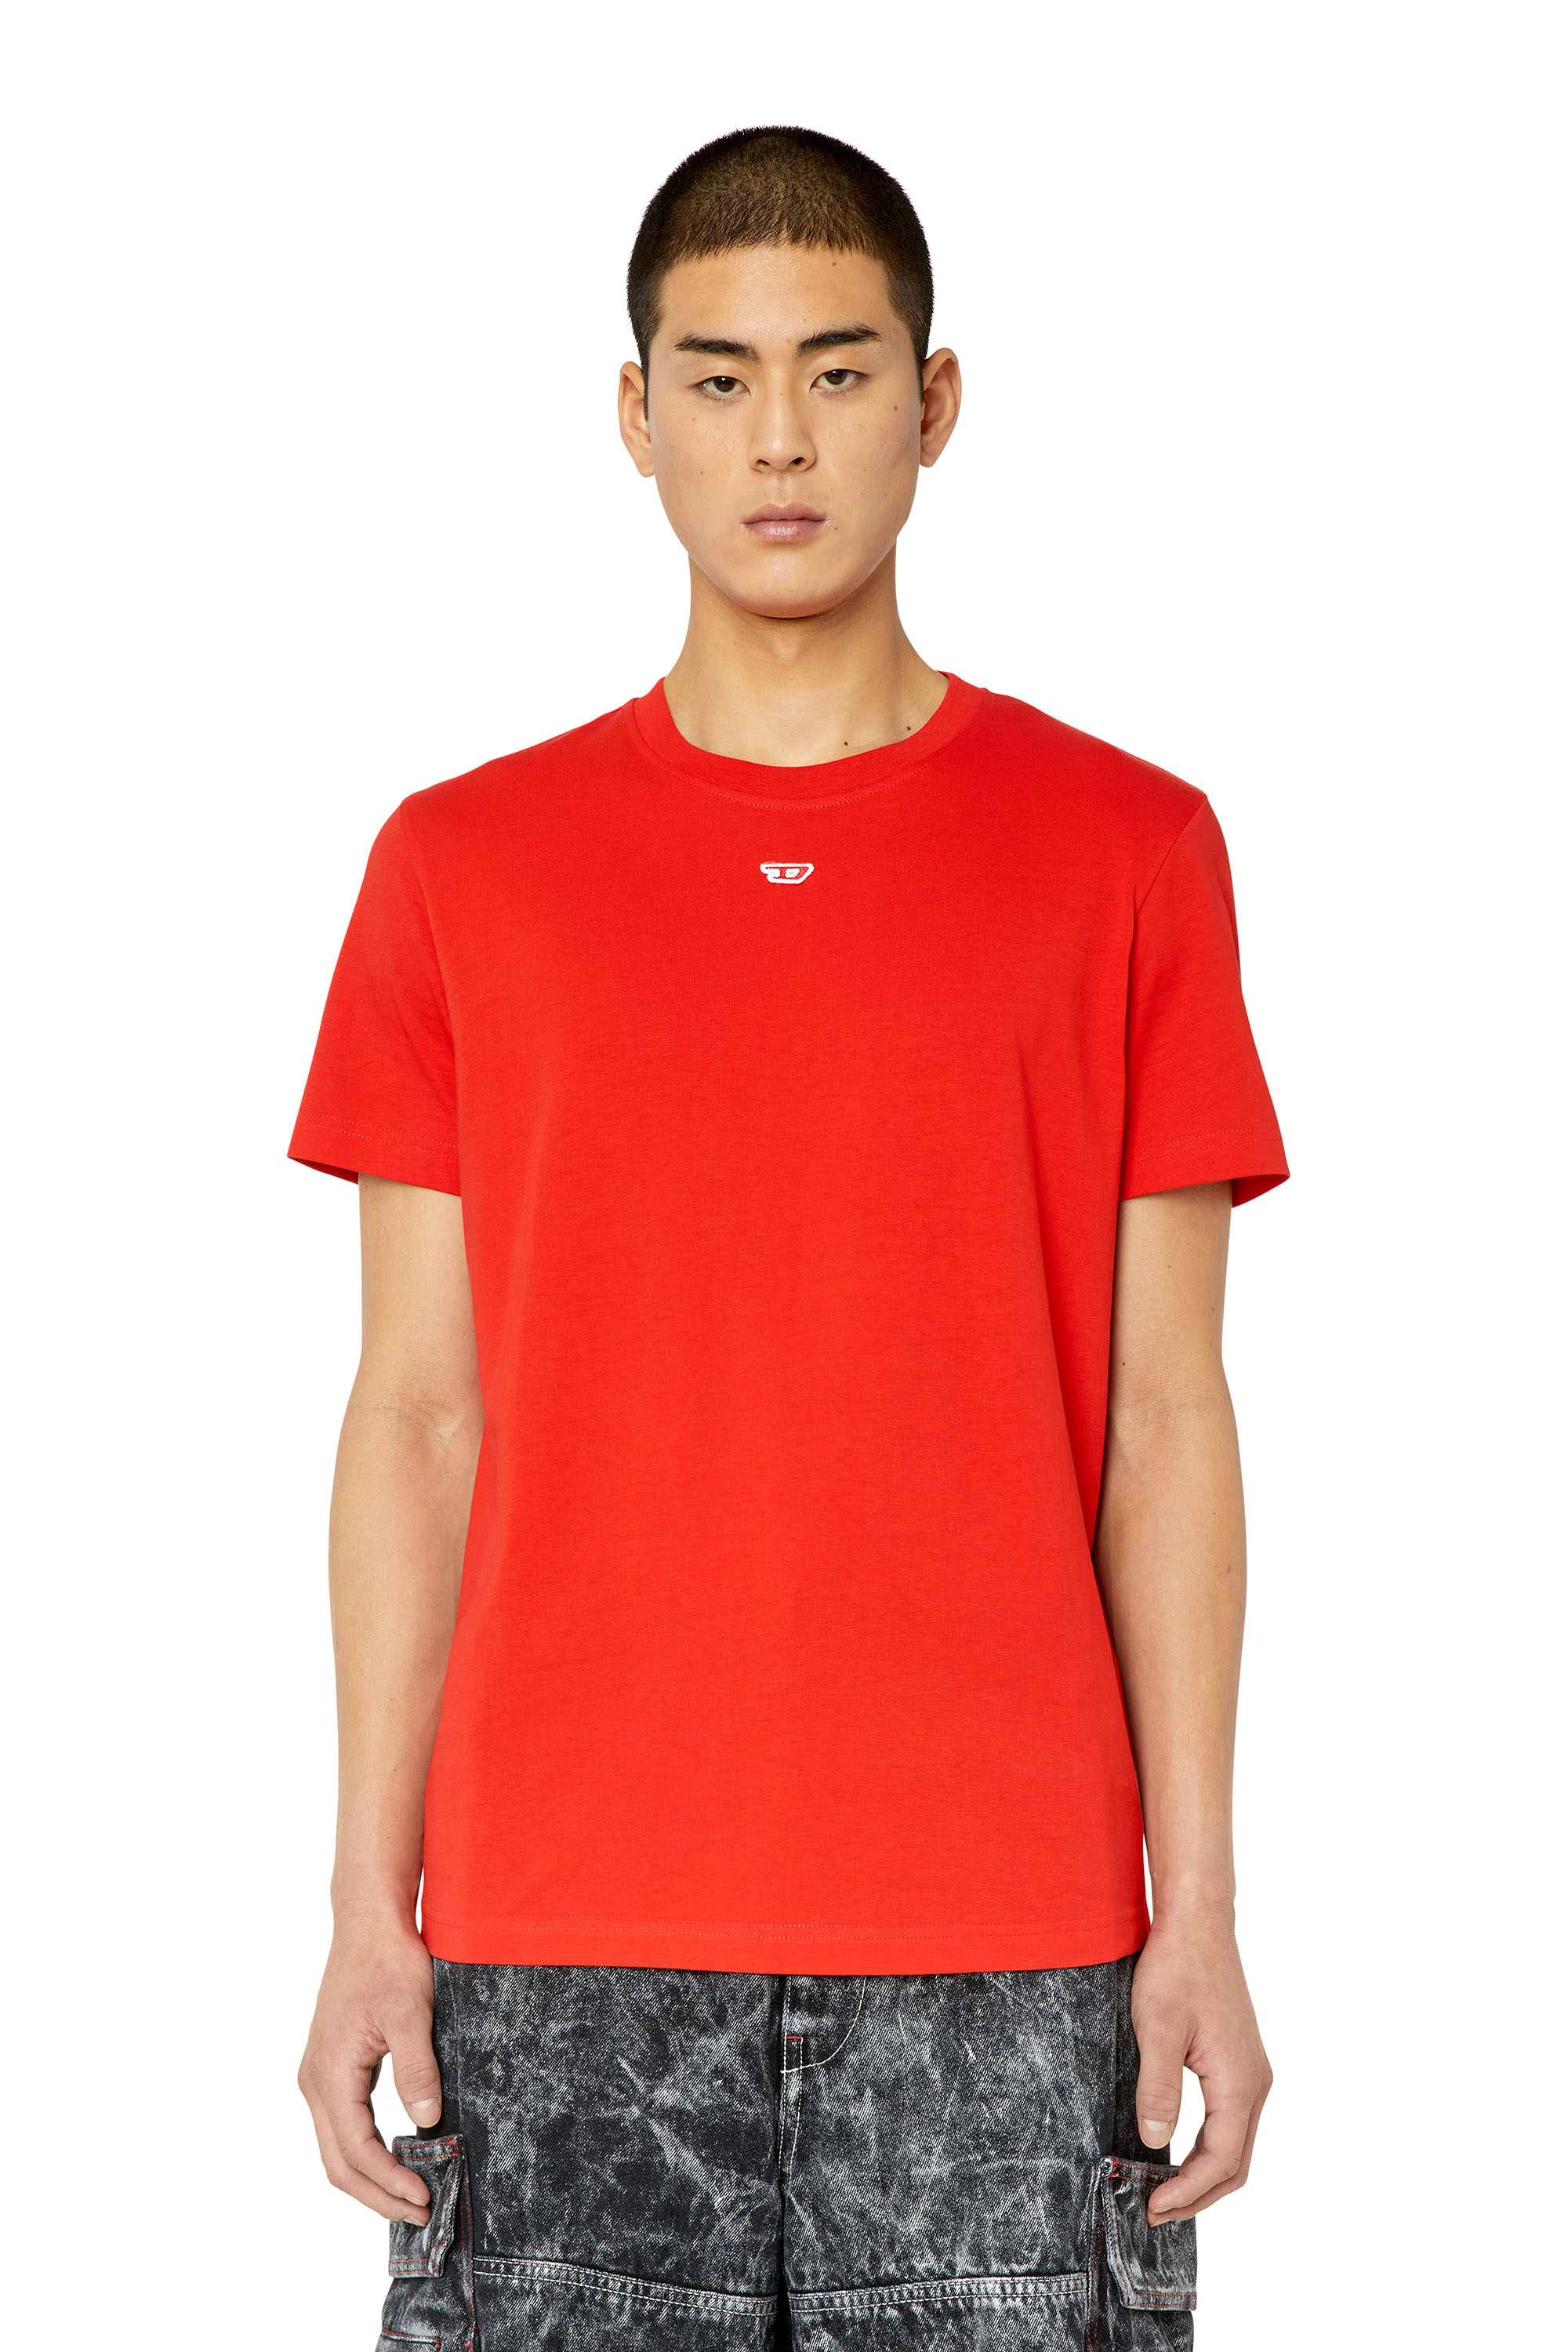 Diesel - Camiseta con parche D - Camisetas - Hombre - Rojo